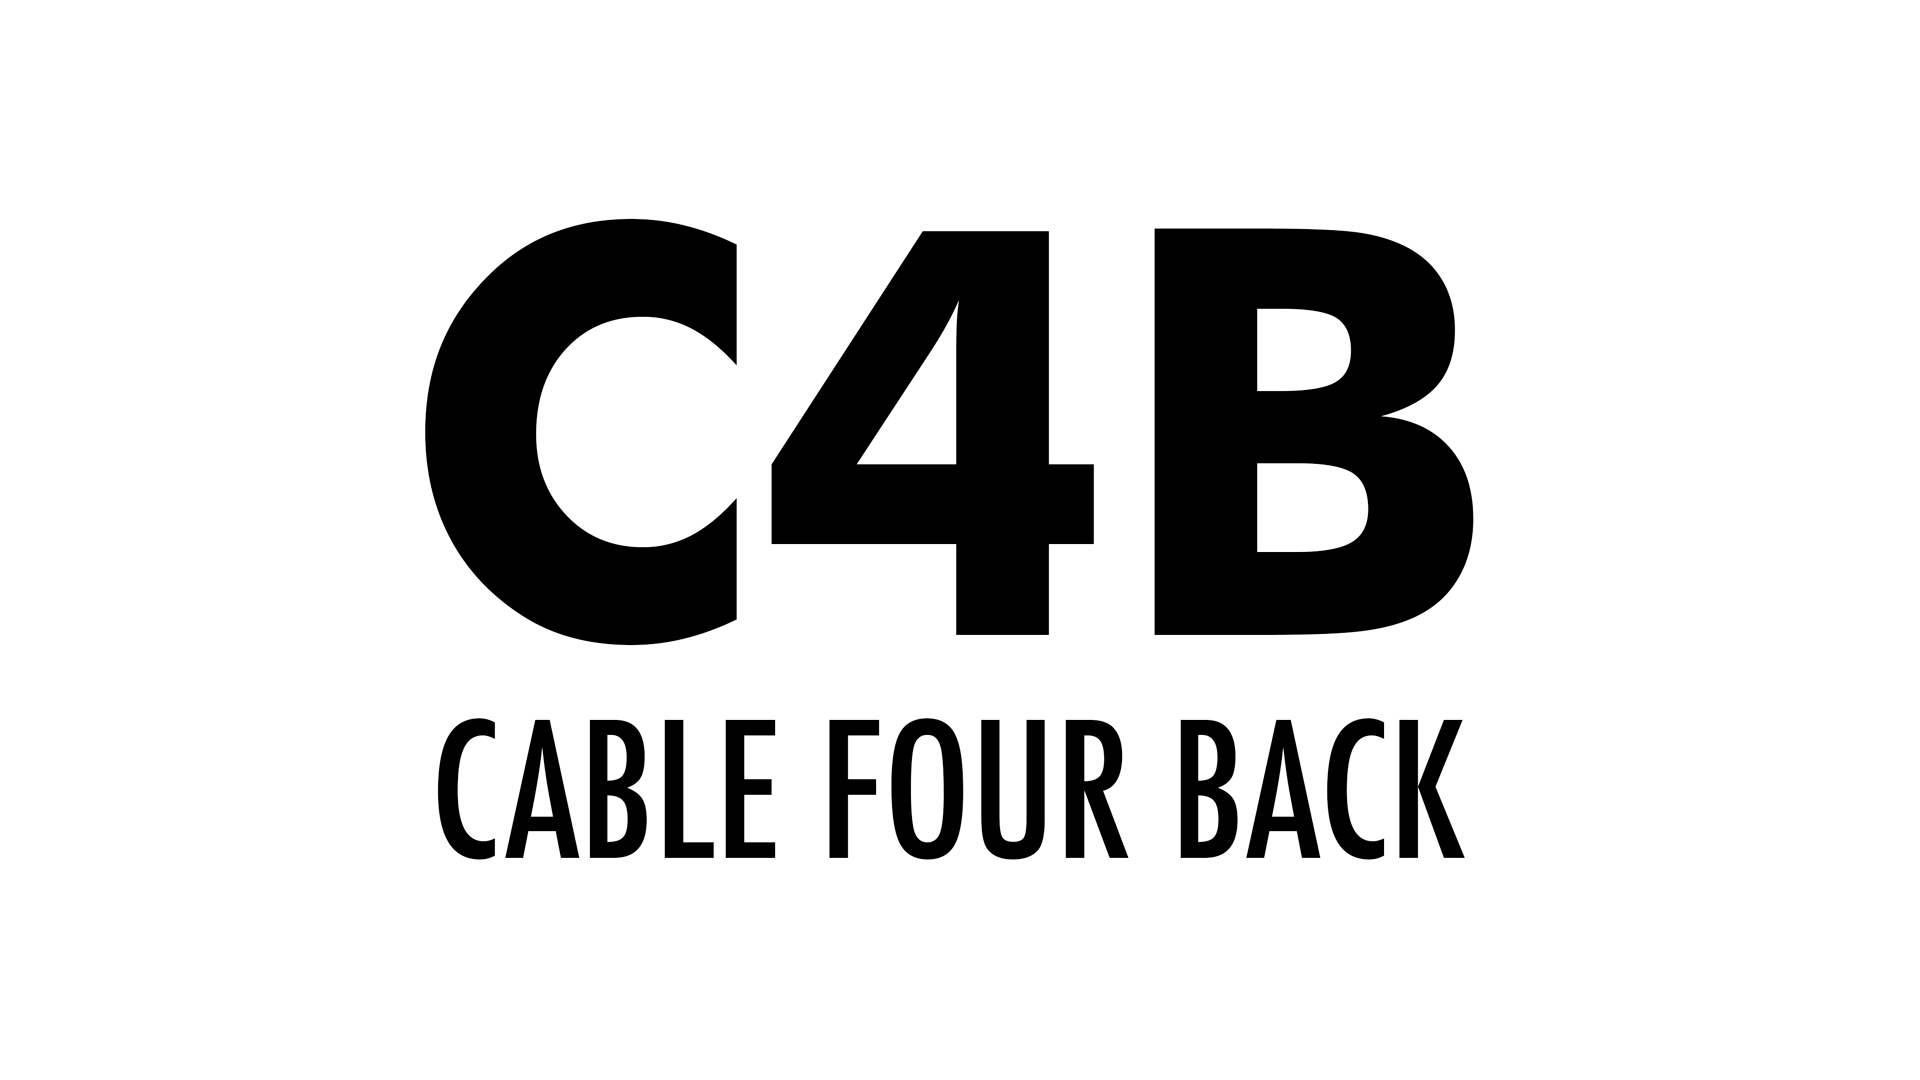 Cable 4 Back (C4B) on Flexee Loom 